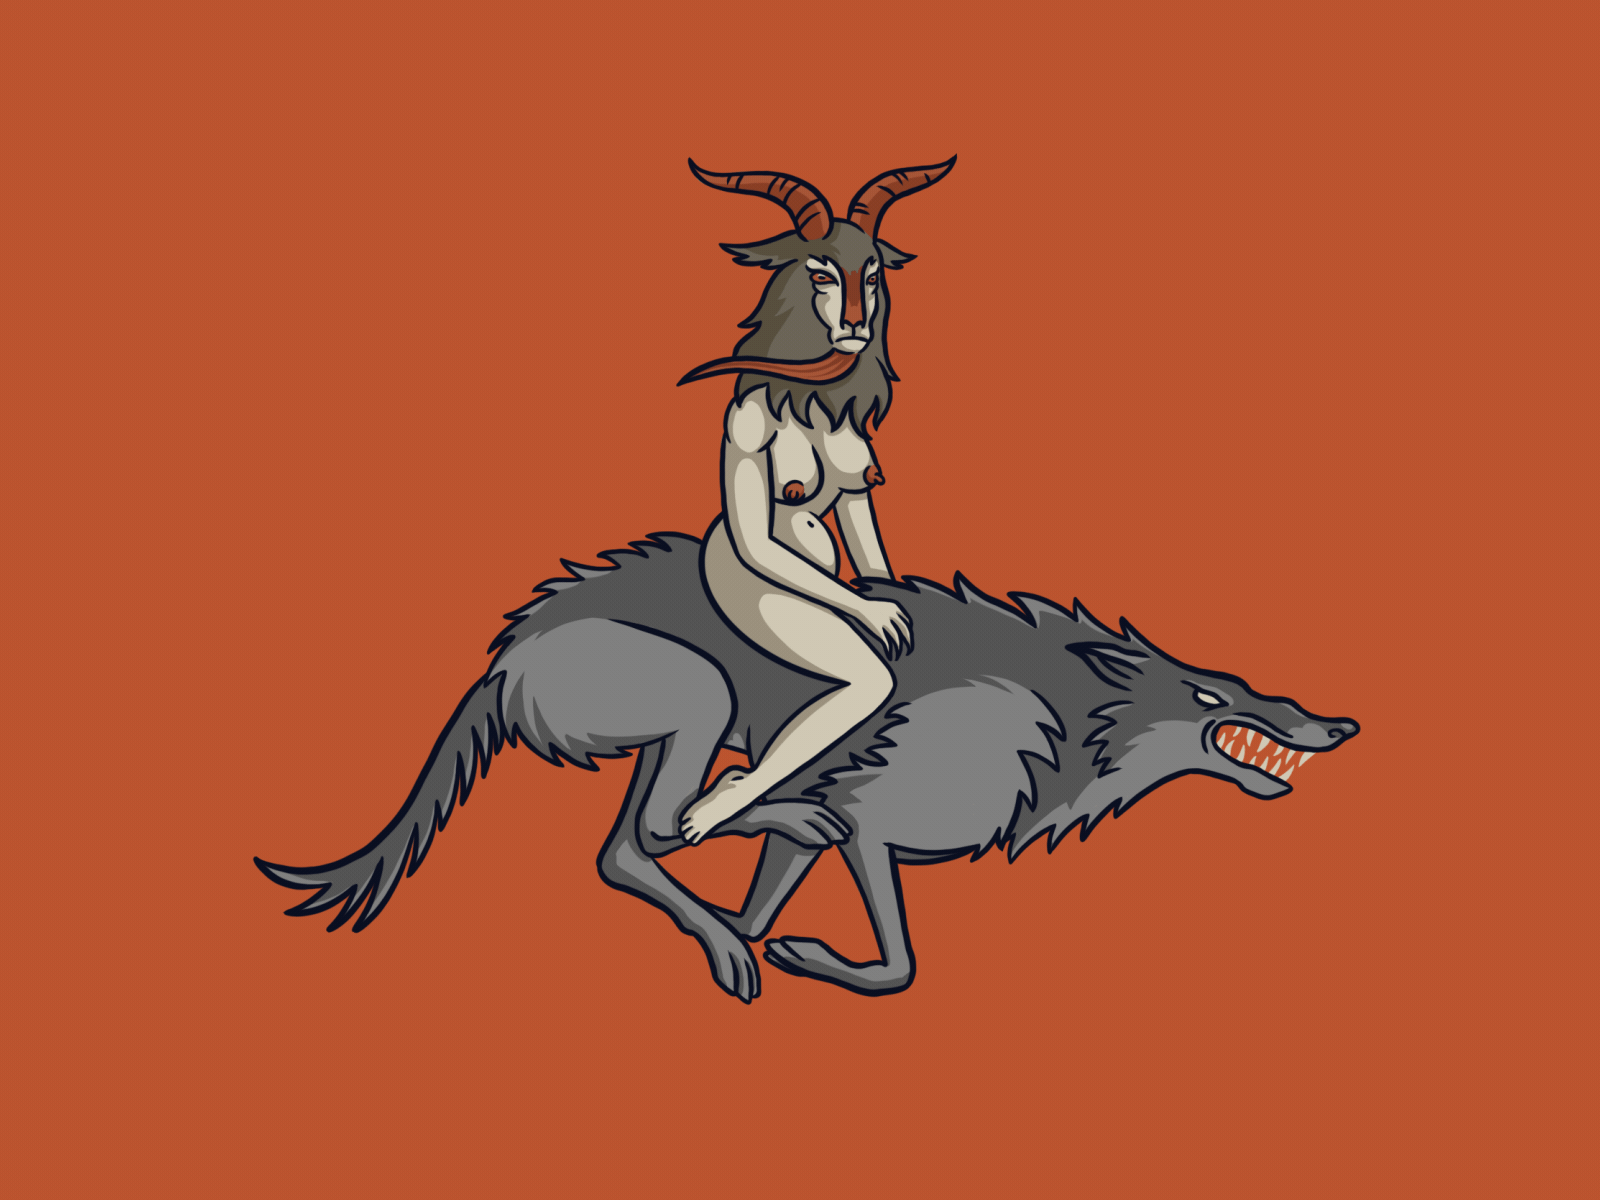 Collaboration "Hellow Monsters"-Mor til trollskogen collaboration goat halloween illustration monster wolf